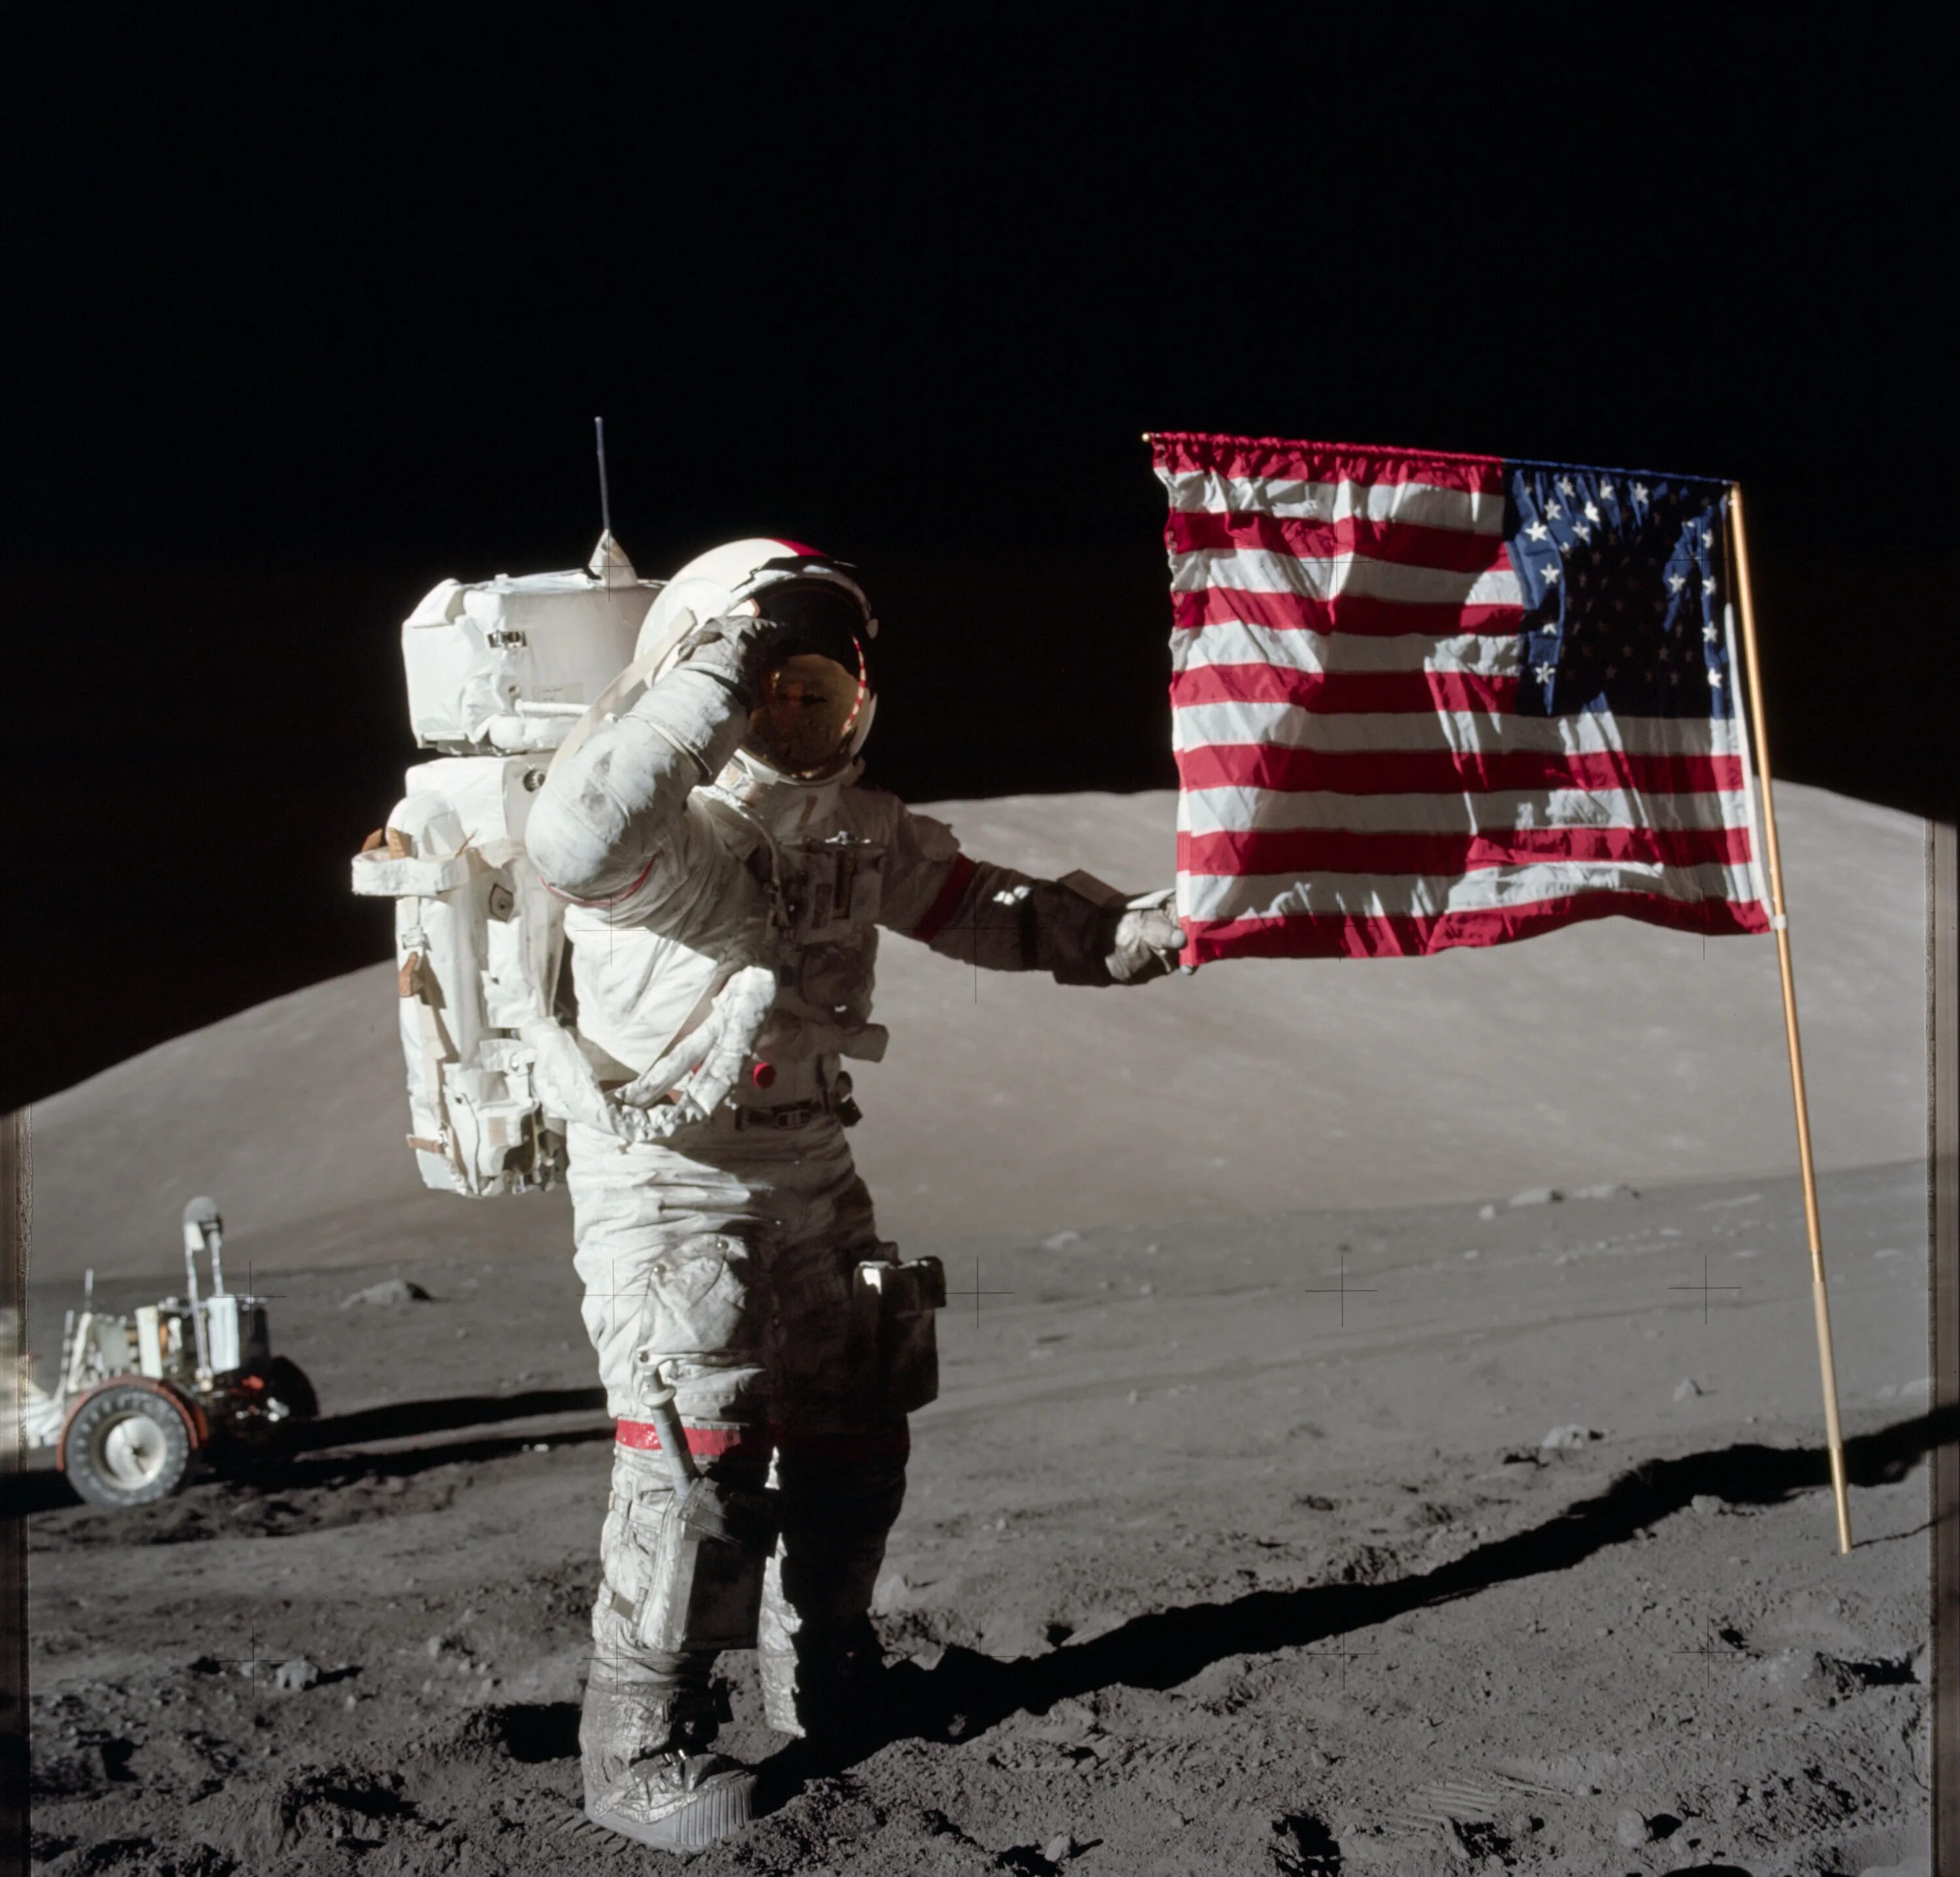 Первый человек высадился на луну. Аполлон 17 Юджин Сернан. Человек на Луне Аполлон 11. Миссия Аполлон 17. Юджин Сернан на Луне.